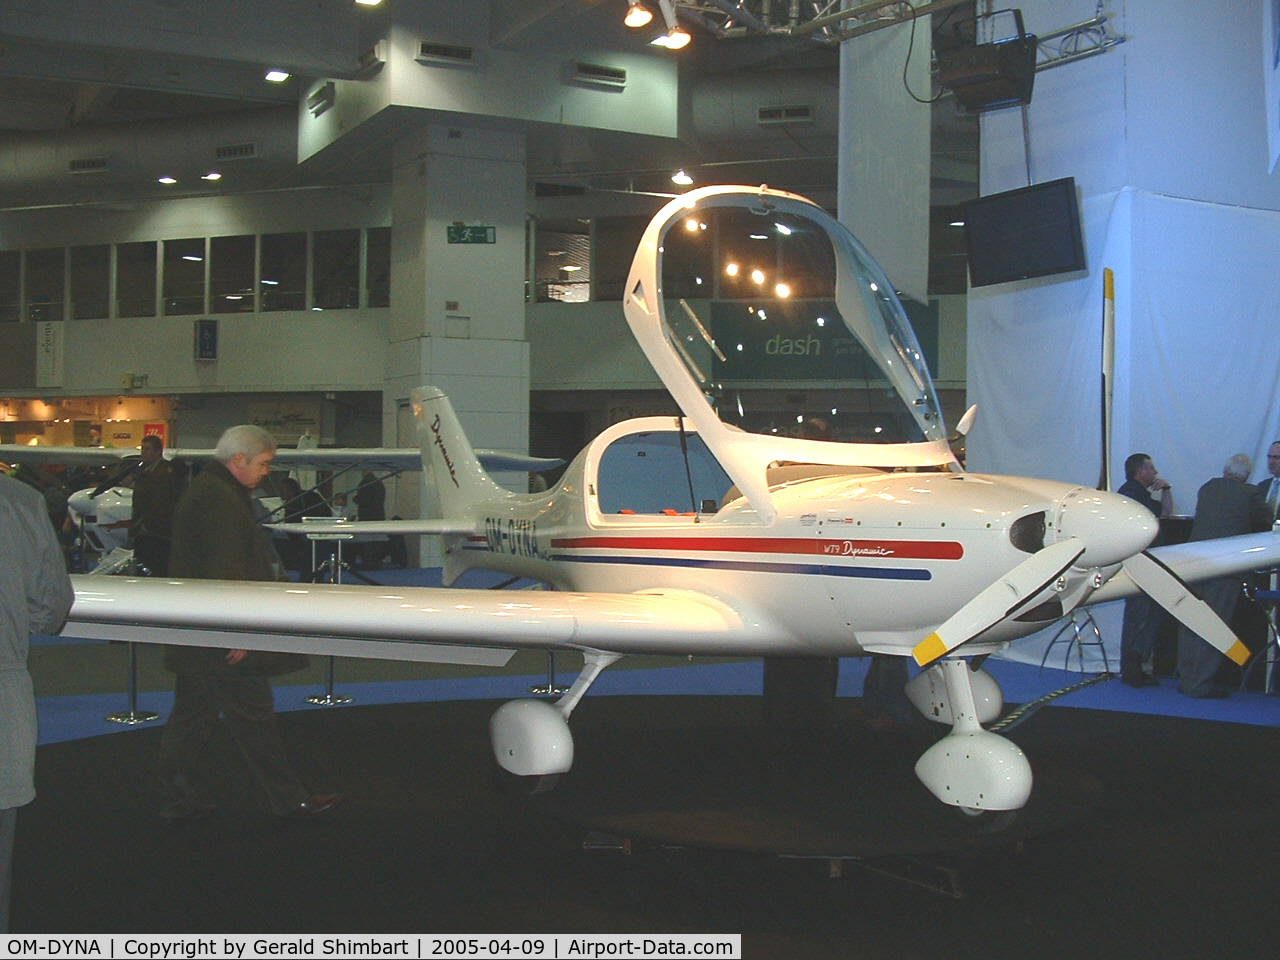 OM-DYNA, 2003 Aerospool WT-9 Dynamic C/N DY027/2003, Aerospool Dynamic WT9